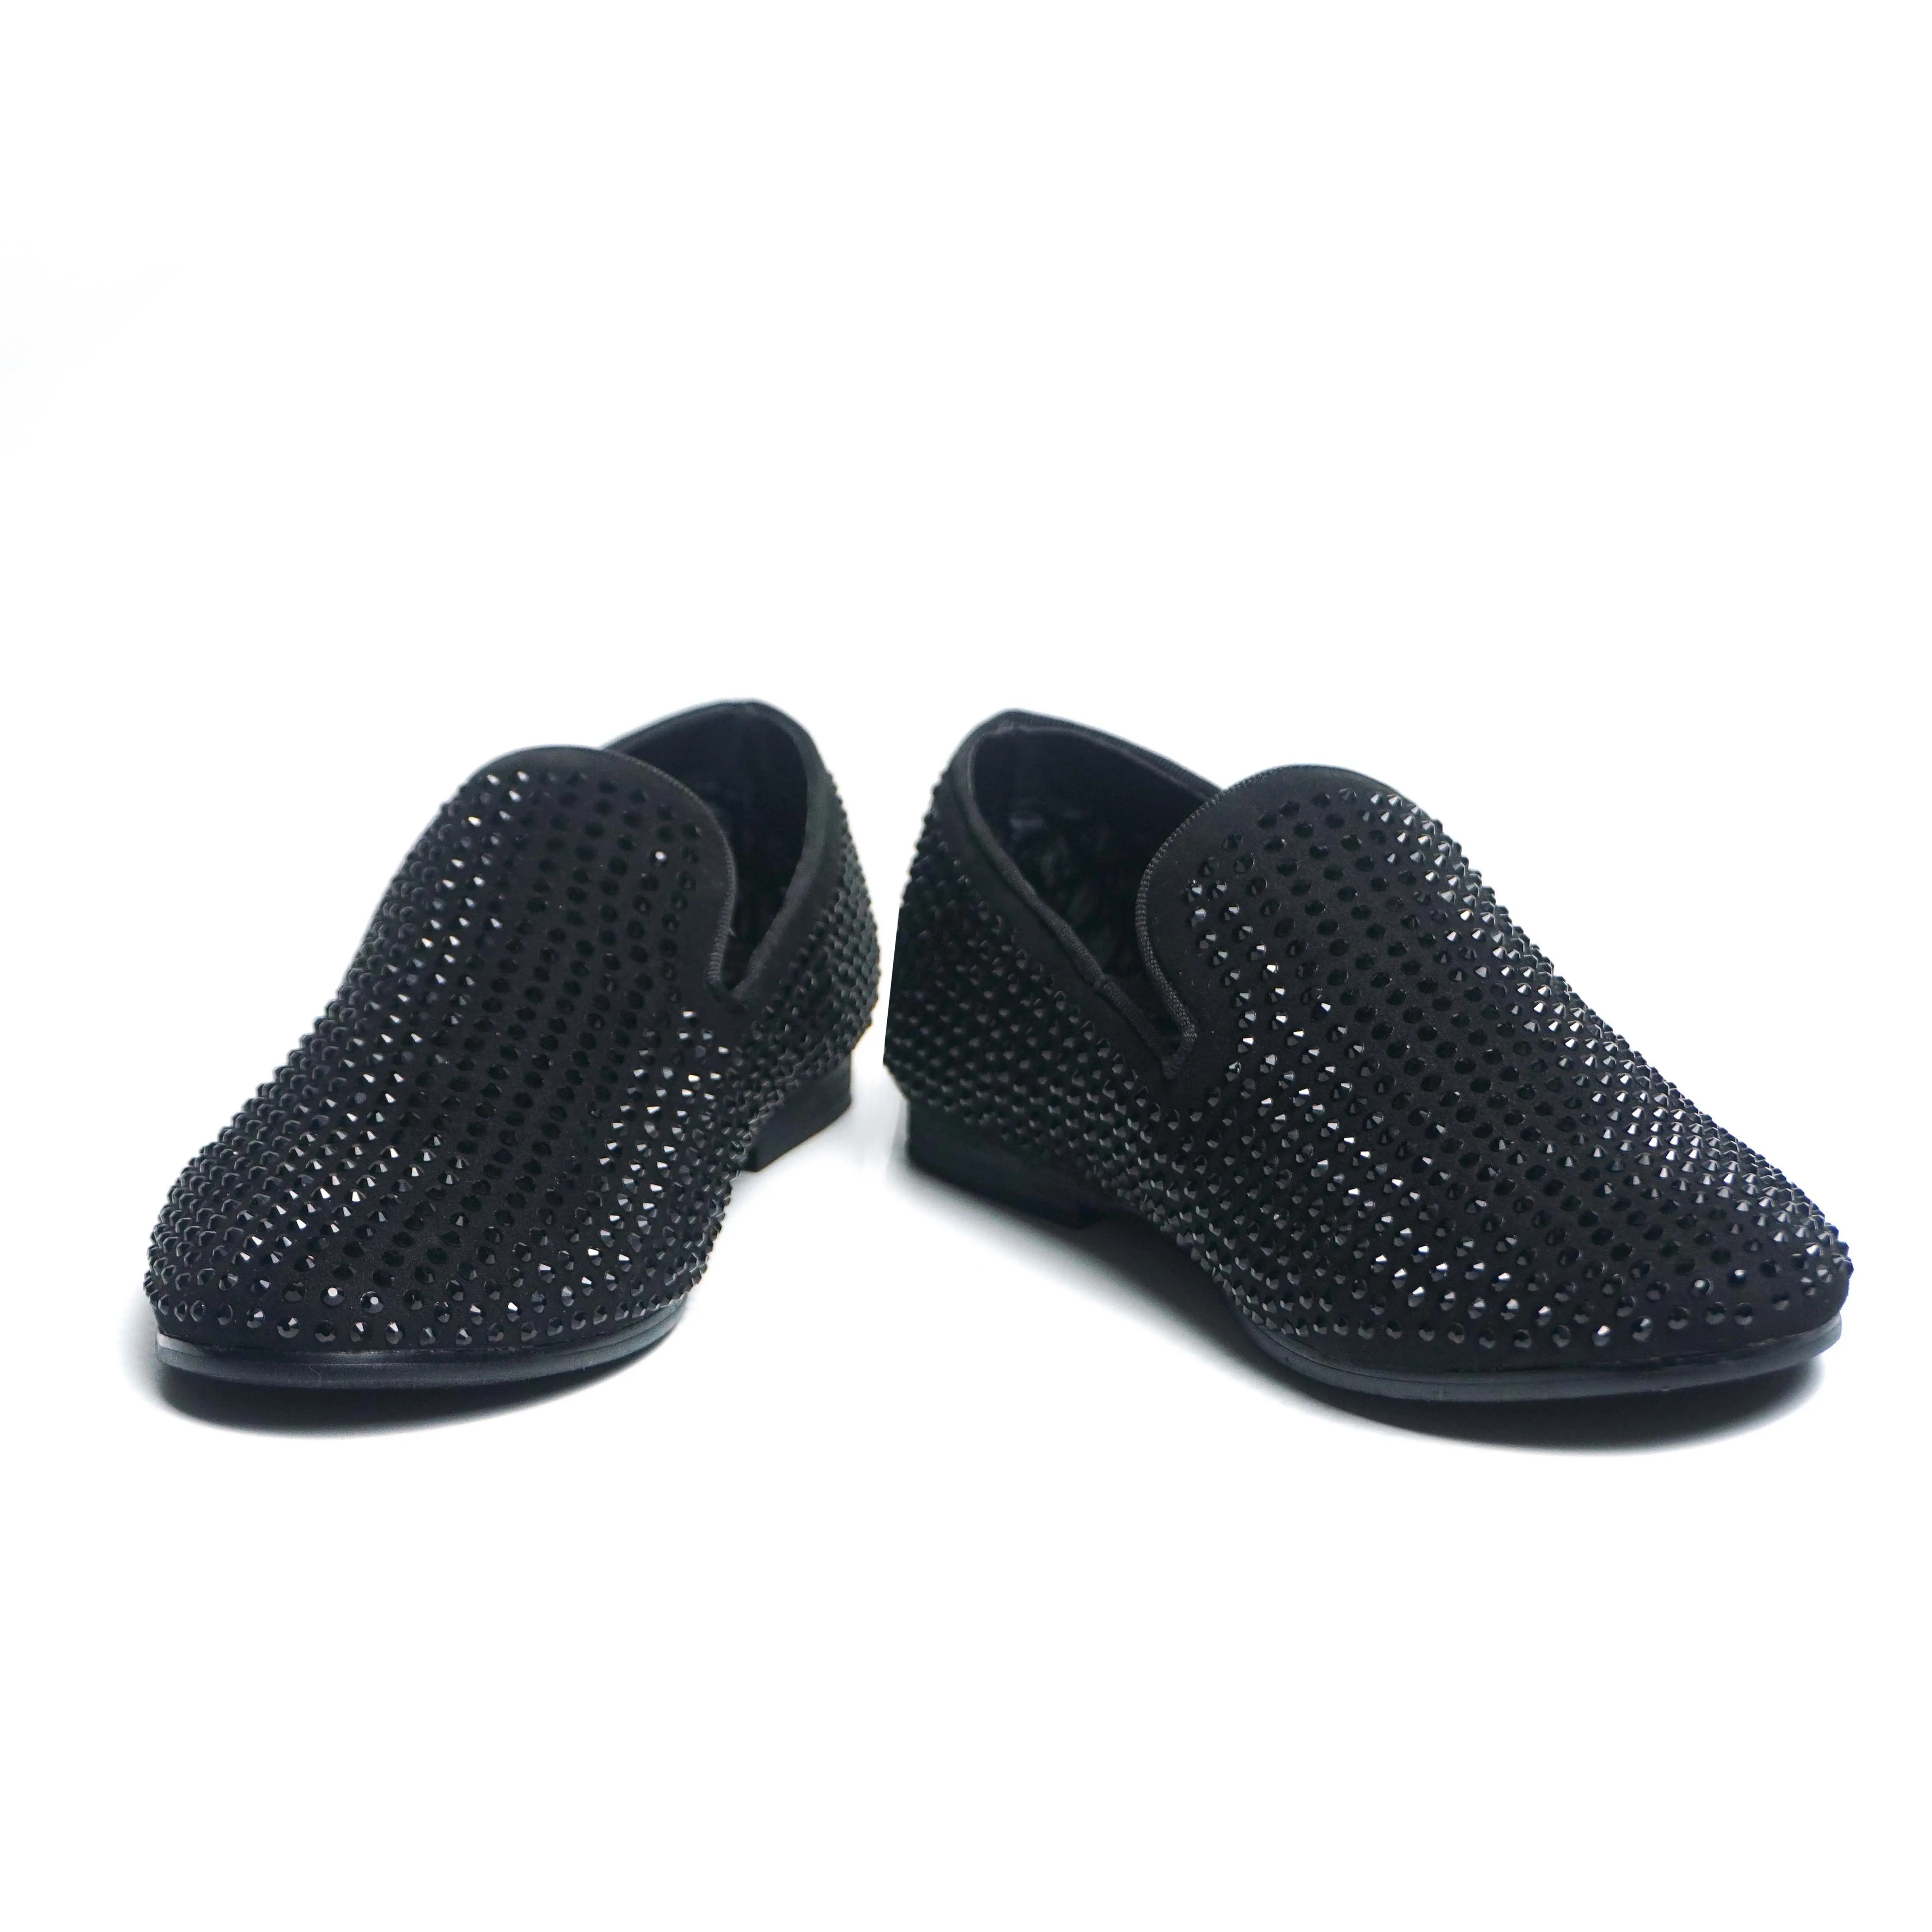 Scarpe sportive per bambini di vendita calda nuovo stile traspirante leggero Slip-on all'aperto comode scarpe Casual per bambini